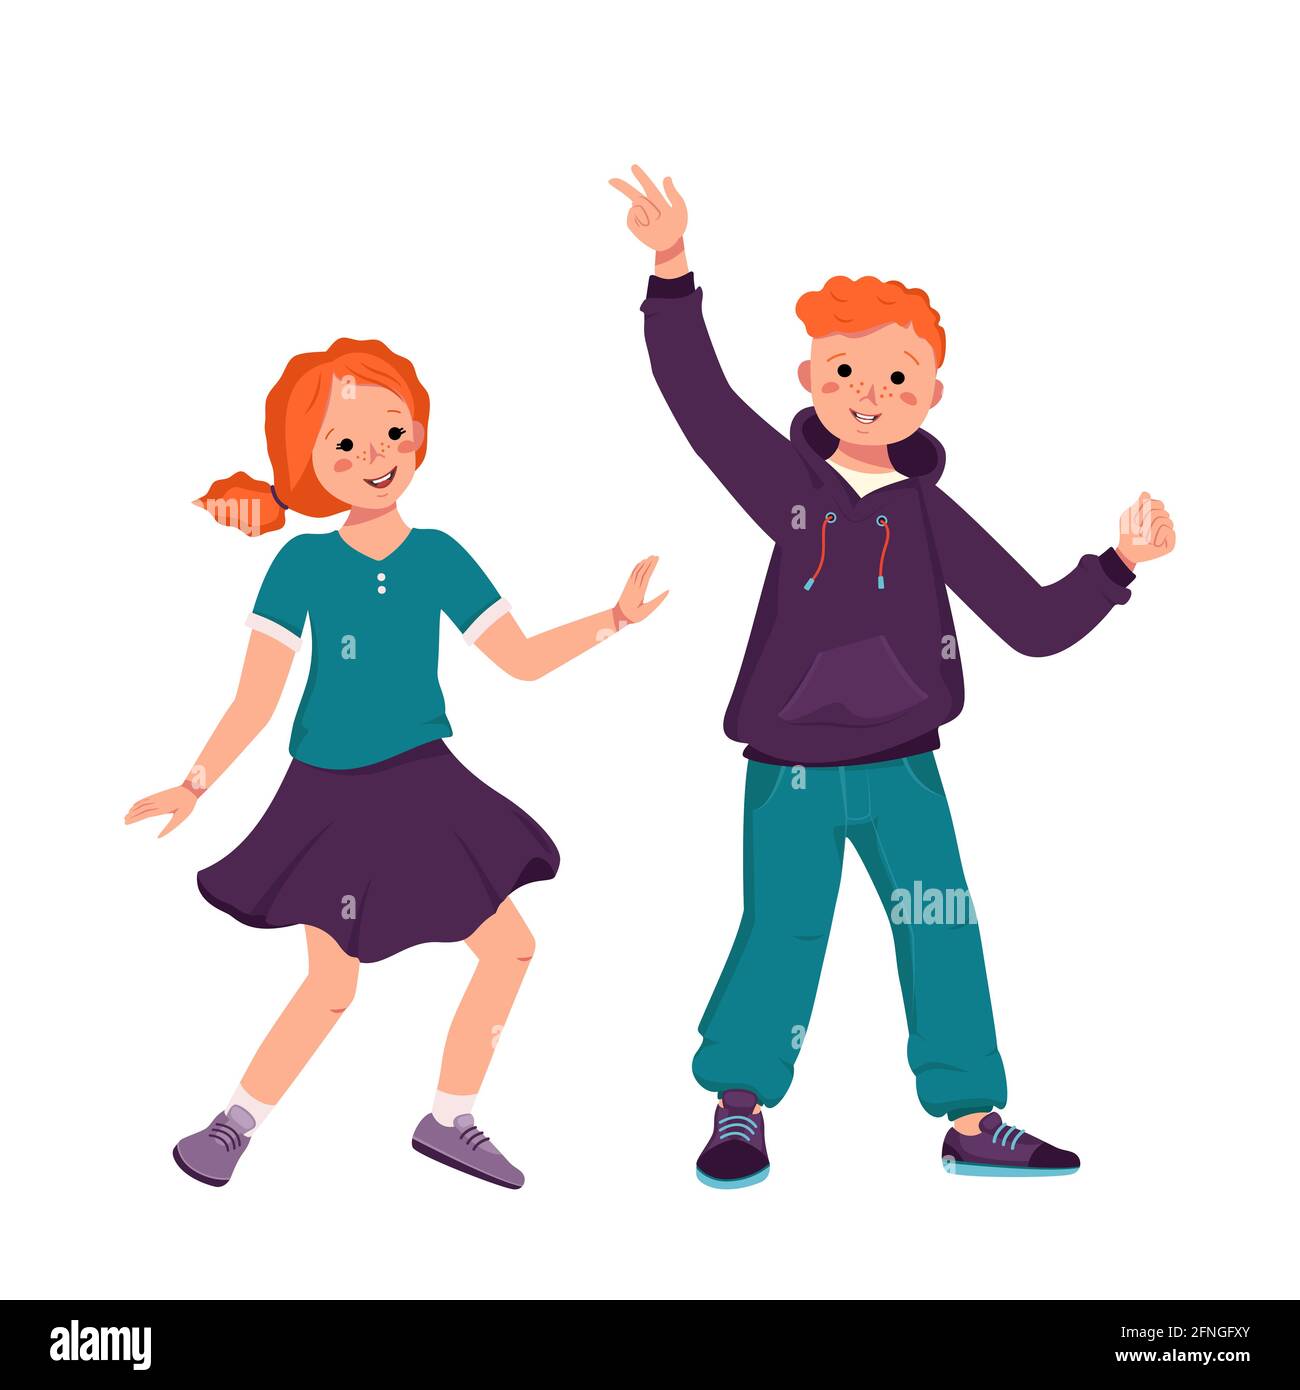 Un garçon dans un sweat à capuche et un Jean et une fille dans une jupe et une chemise avec des cheveux rouges et des taches de rousseur. Des enfants souriants dansent. Adolescents dans des vêtements décontractés Illustration de Vecteur